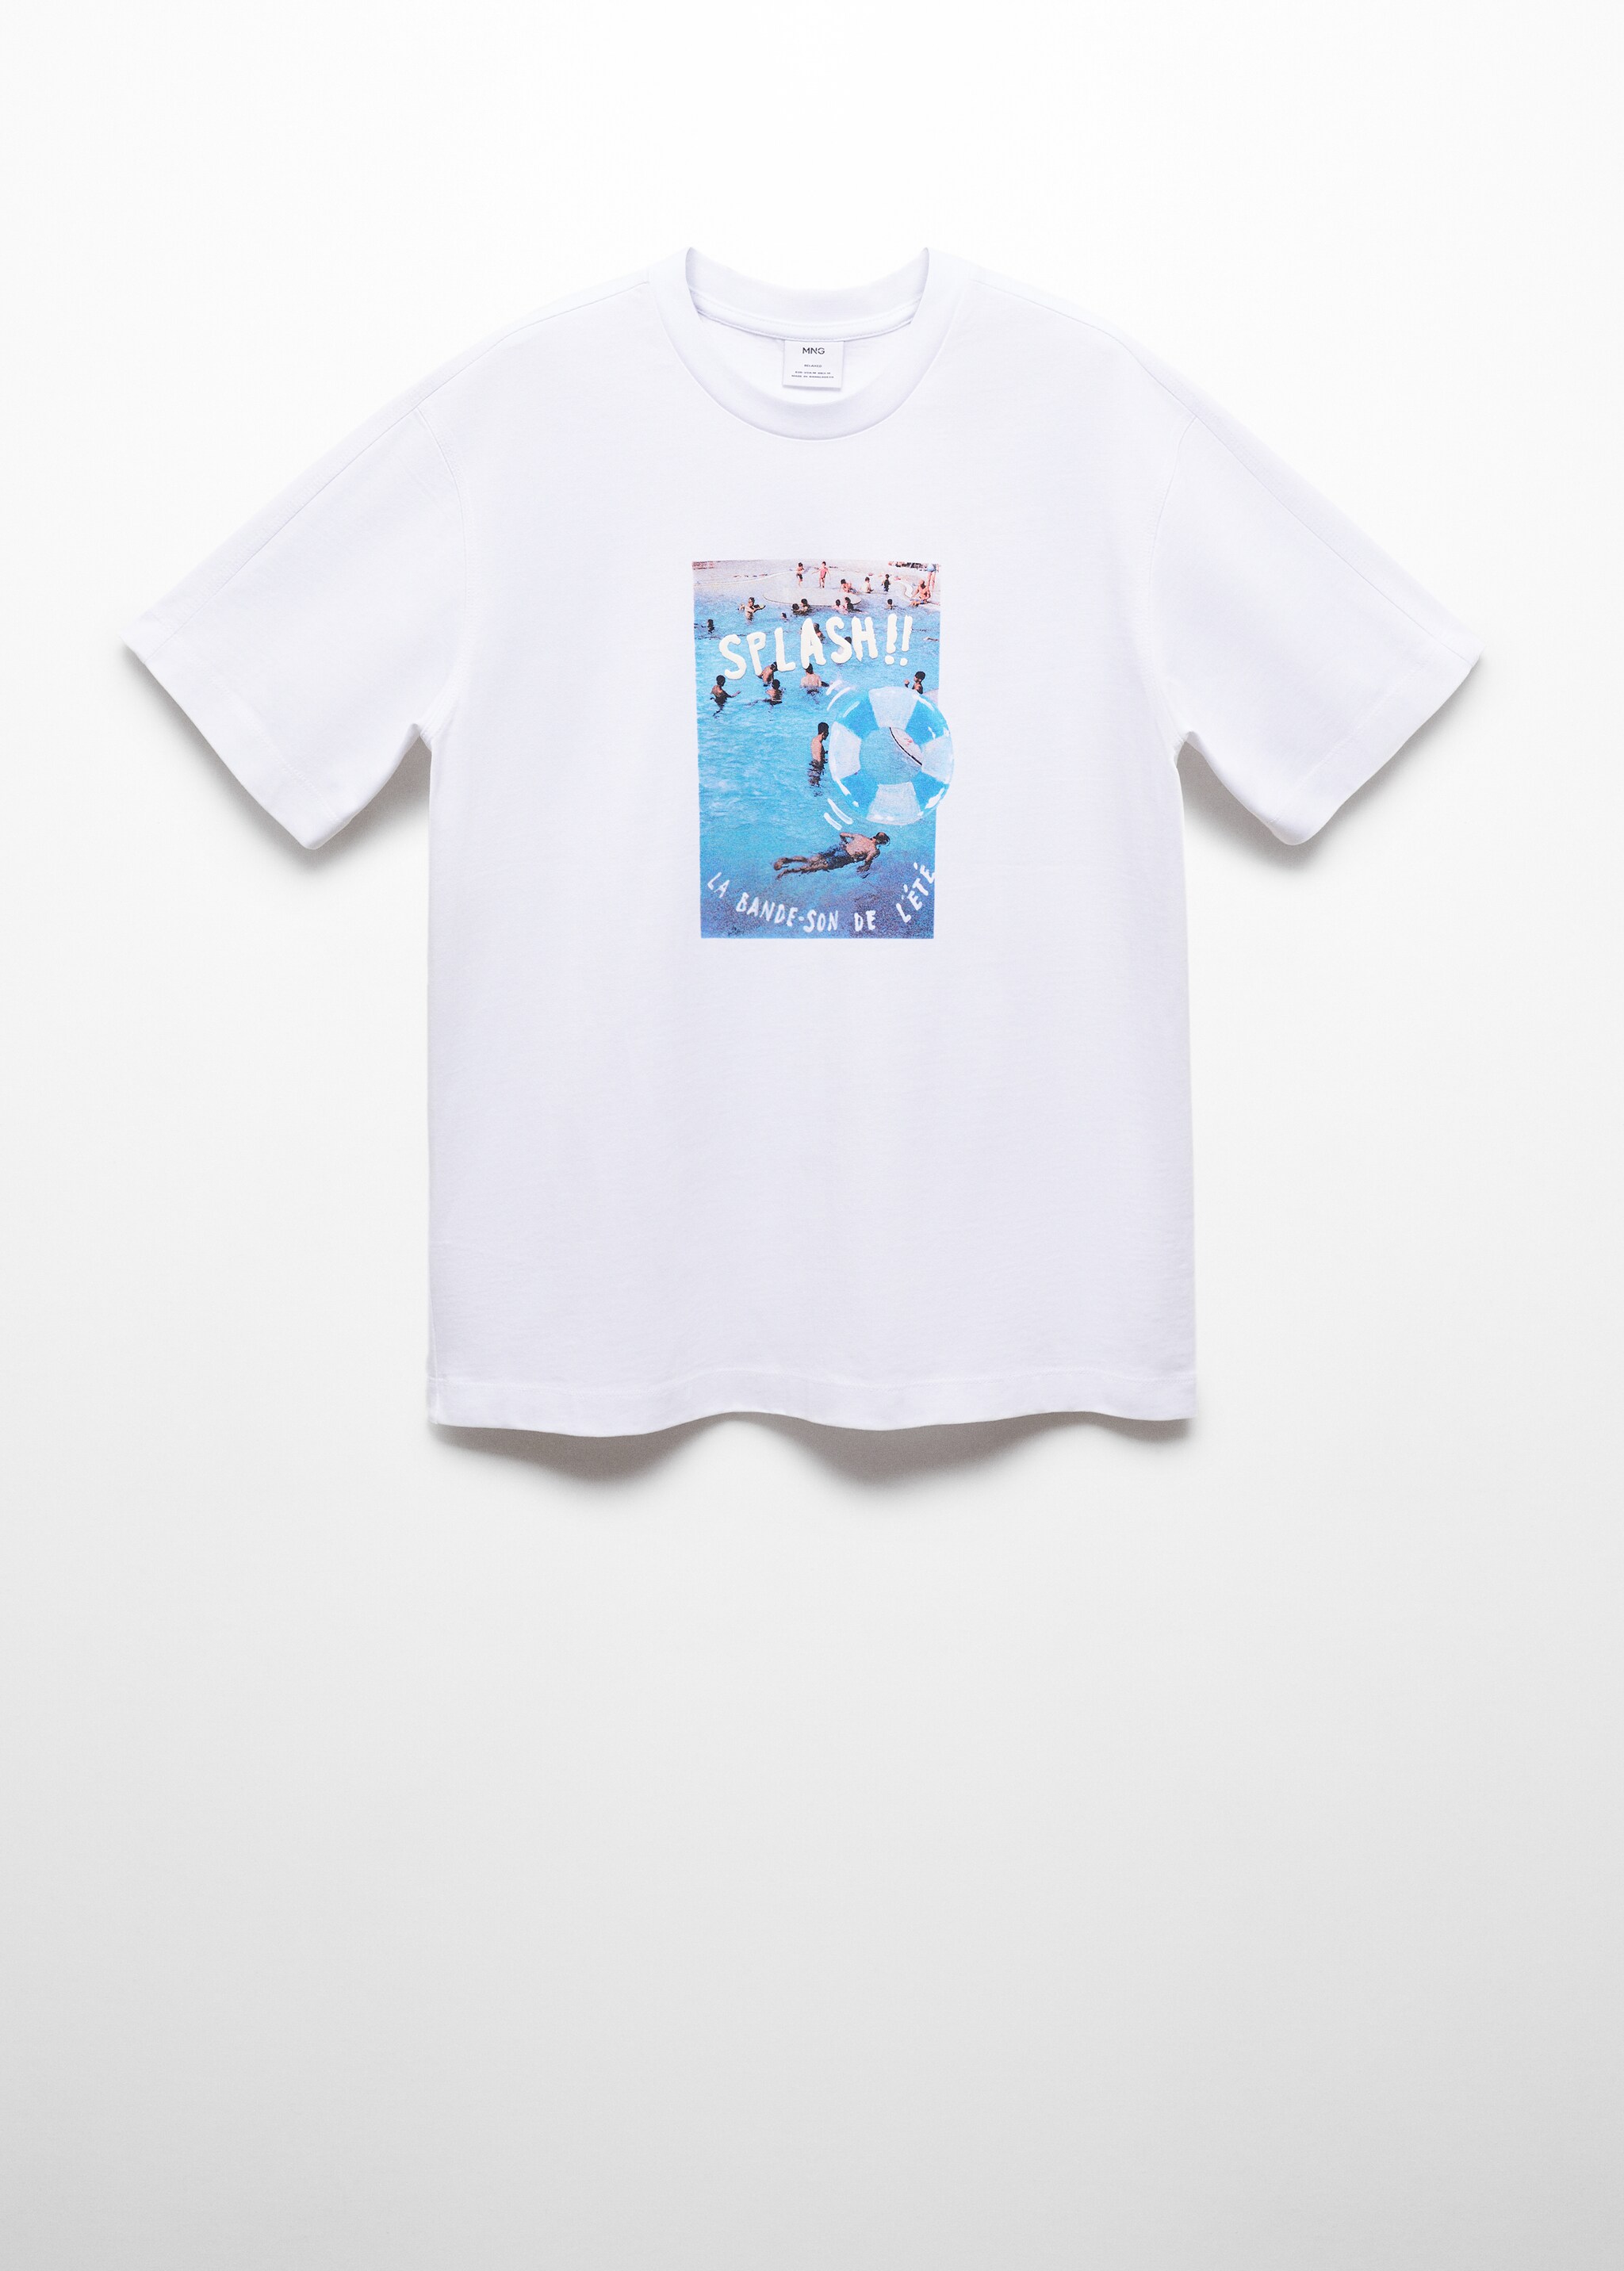 Camiseta algodón estampado dibujo - Artículo sin modelo